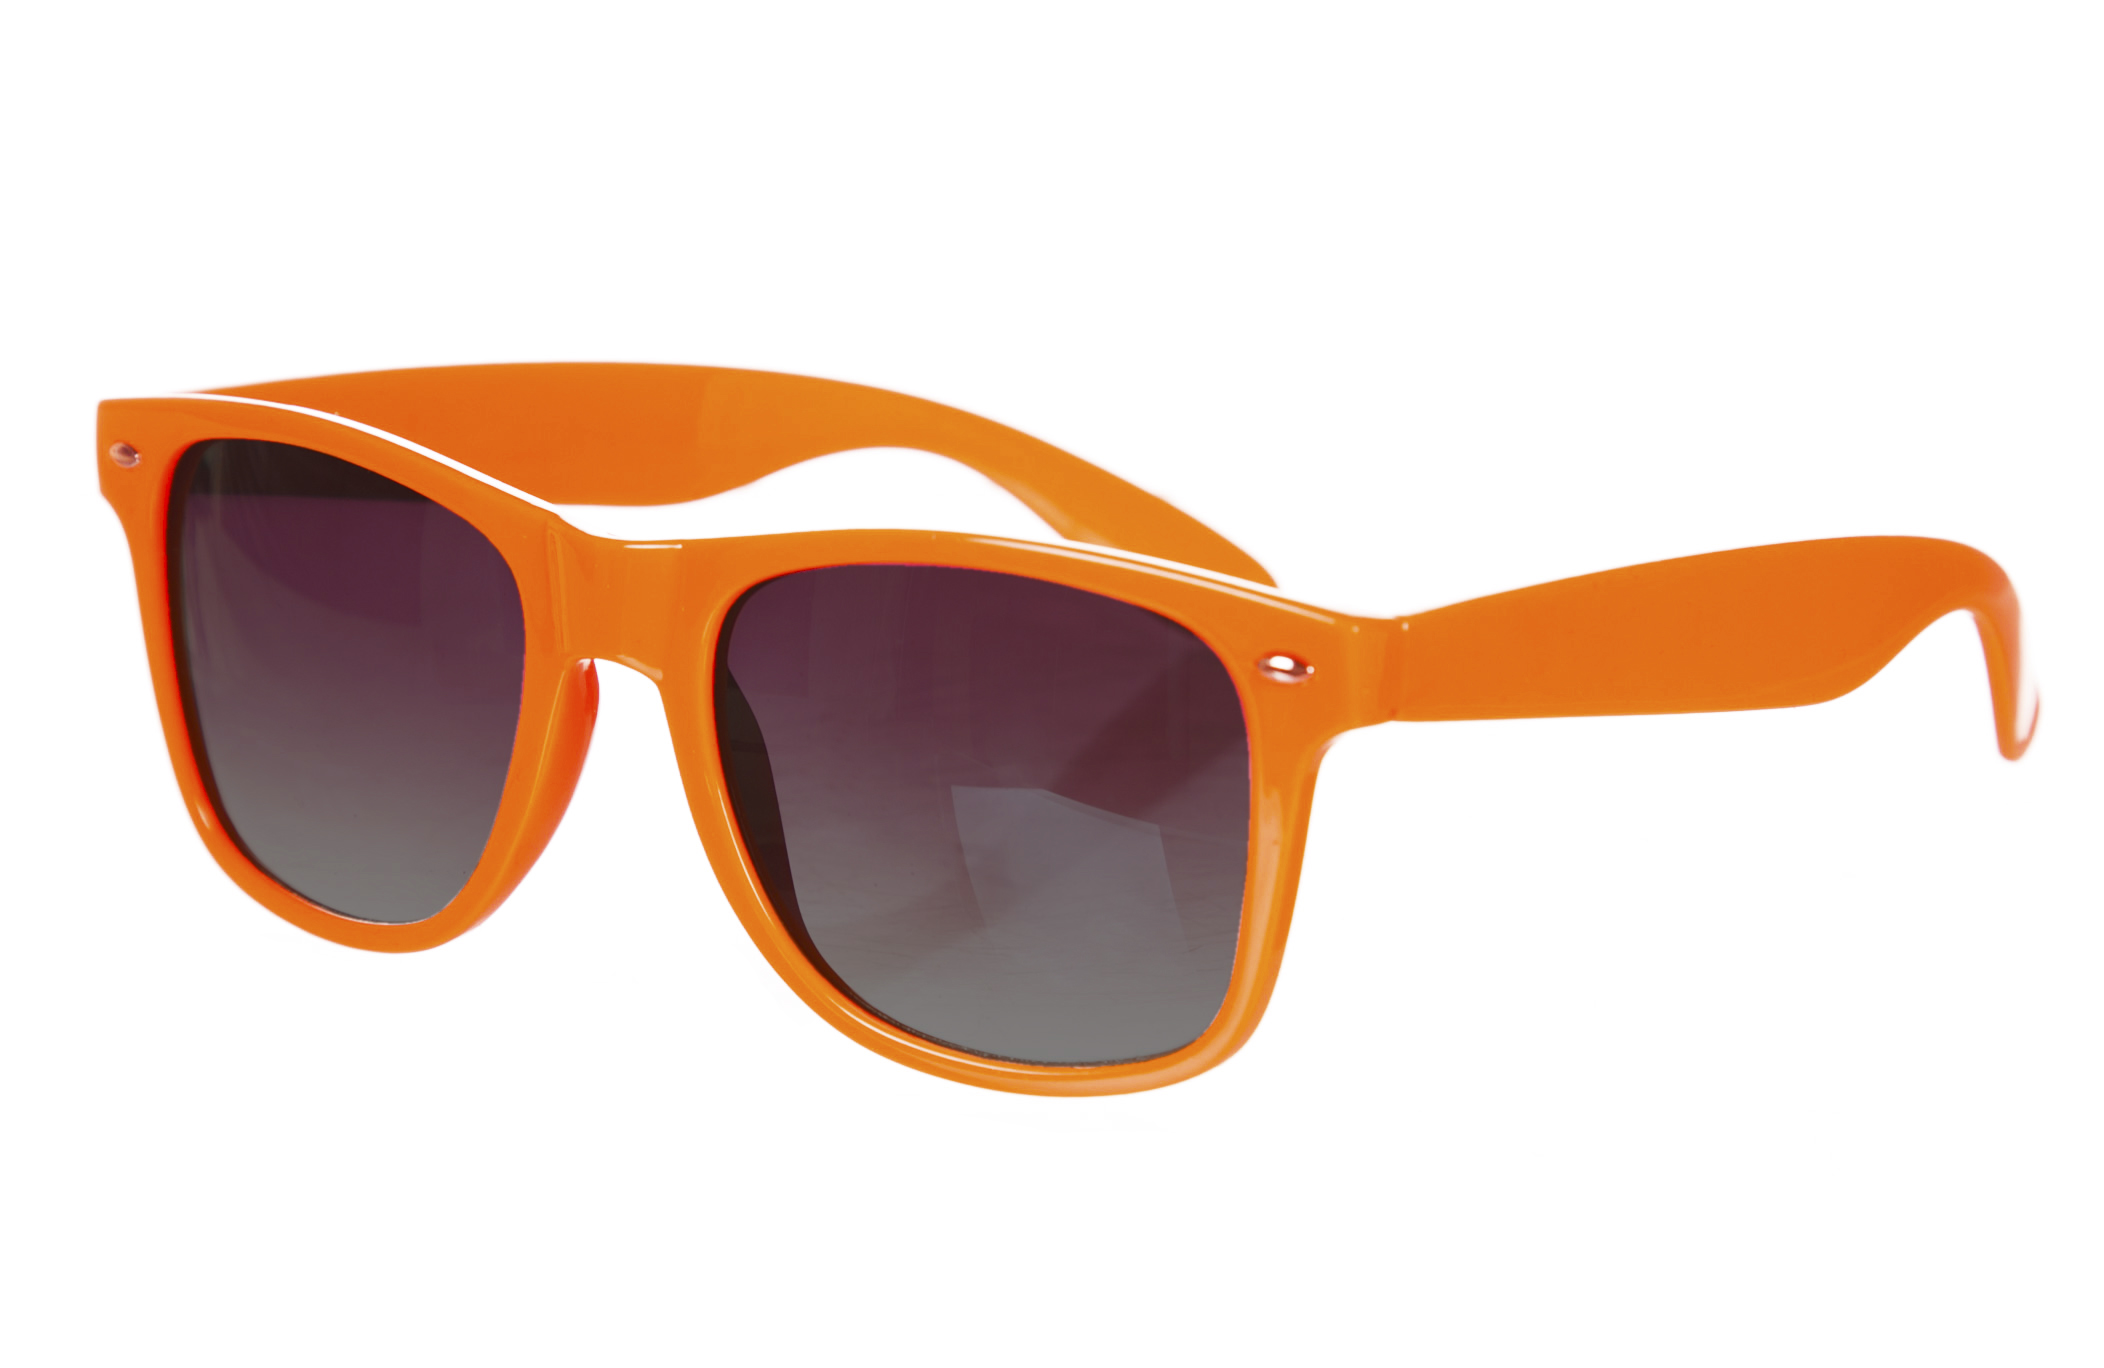 ORANGE Wayfarer Sunglasses